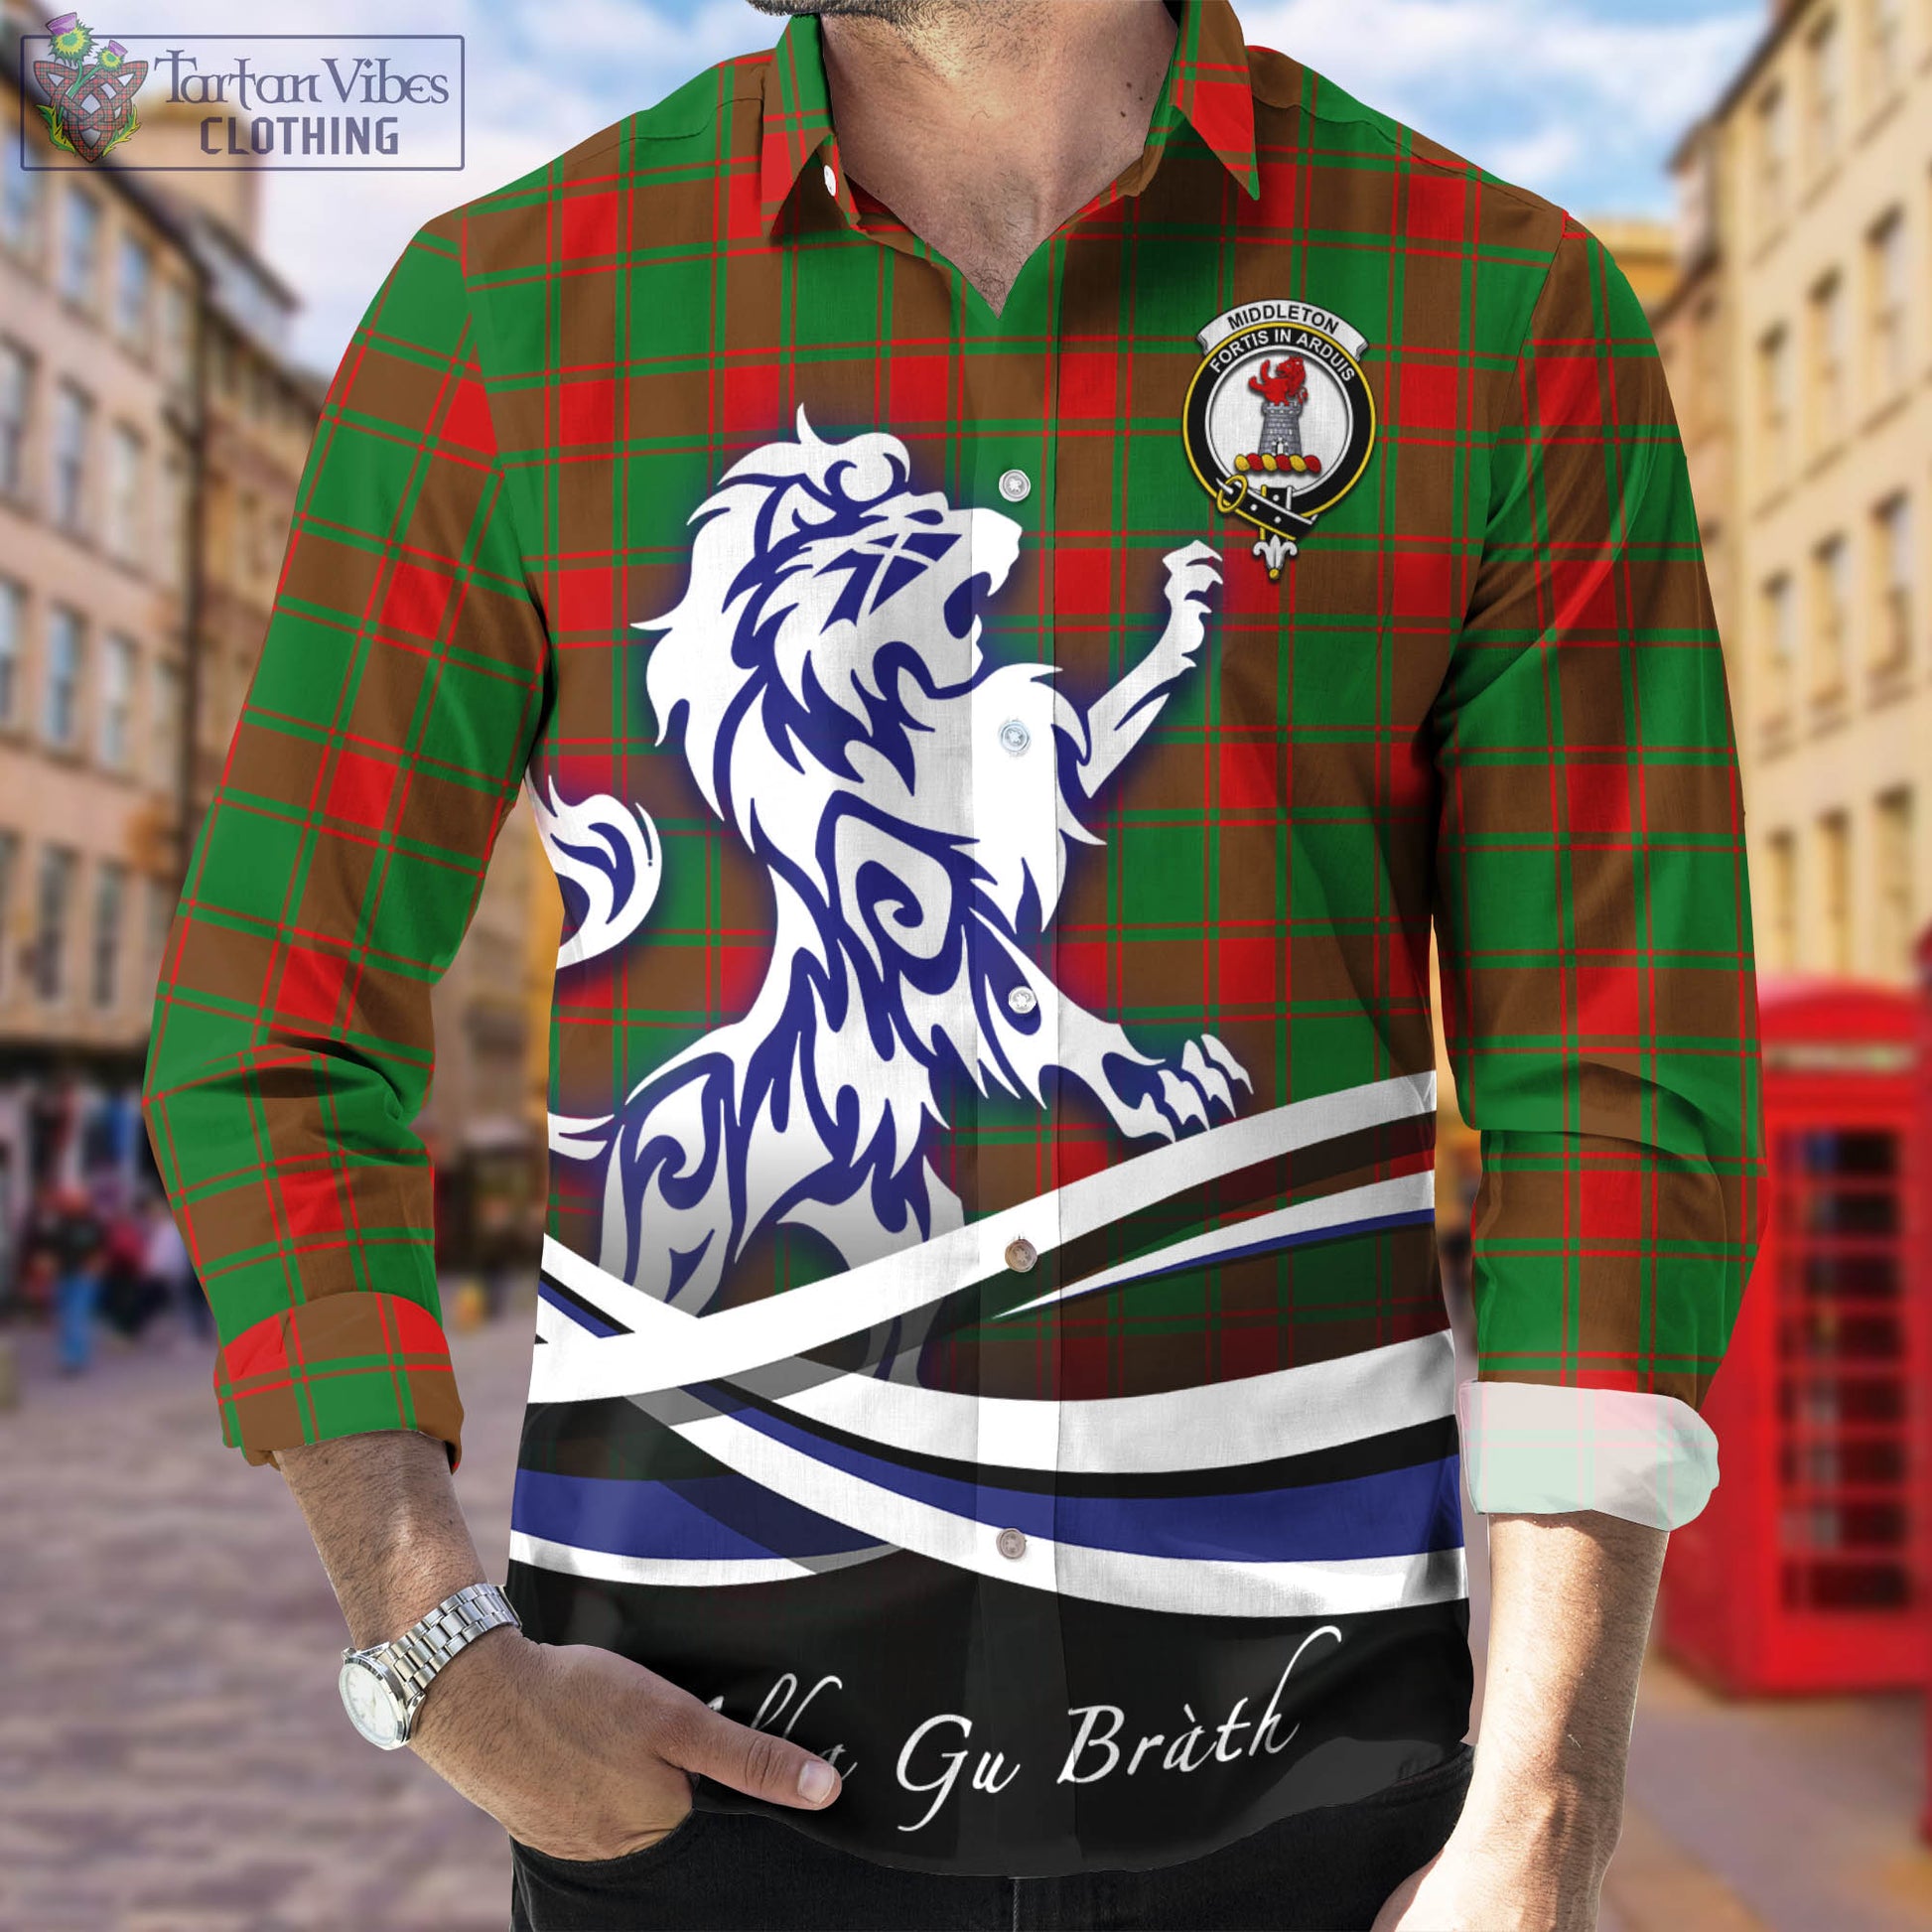 middleton-modern-tartan-long-sleeve-button-up-shirt-with-alba-gu-brath-regal-lion-emblem